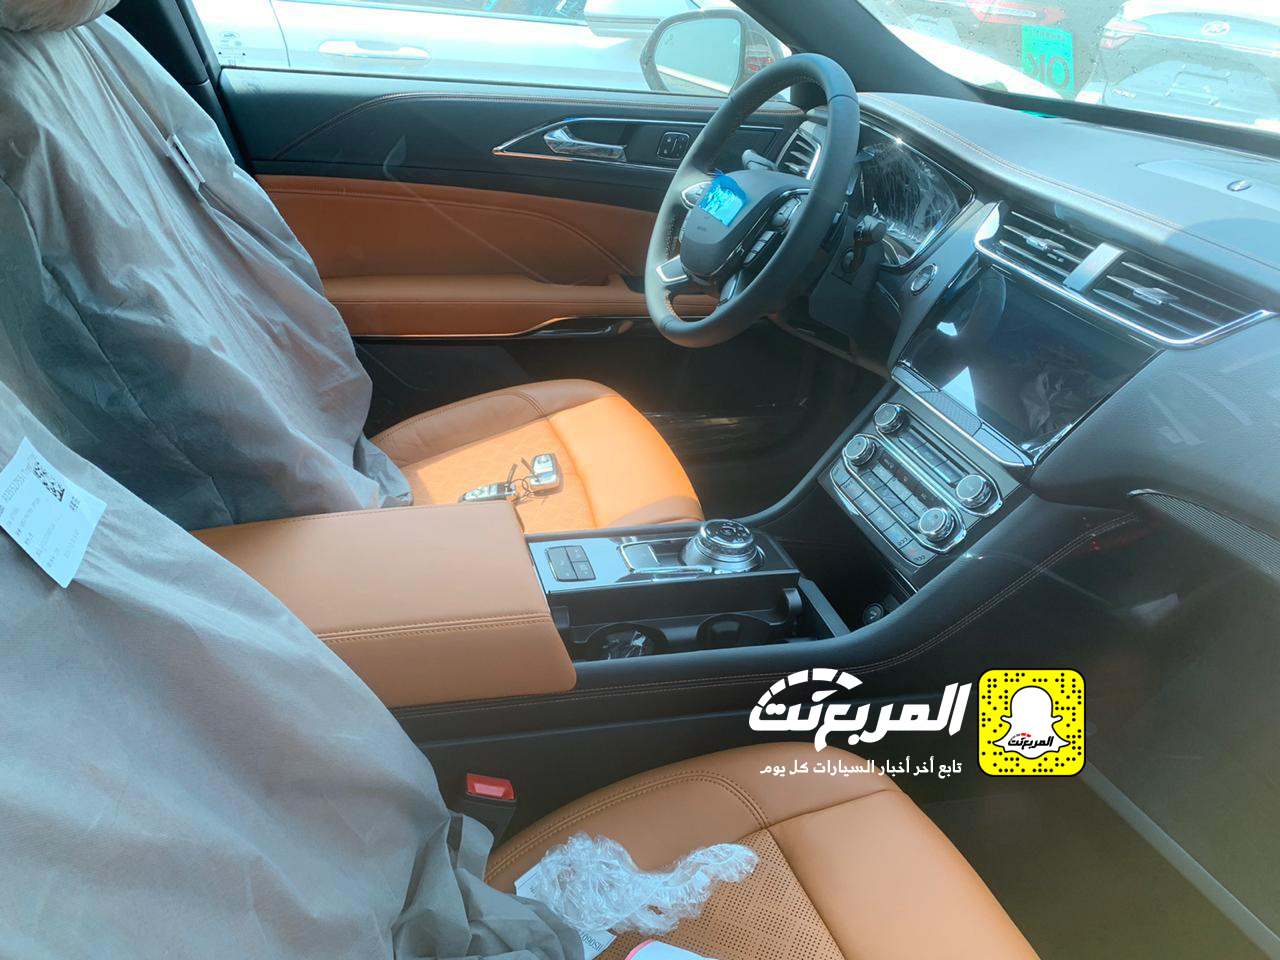 "بالصور" وصول فورد توروس 2020 الجديدة كلياً الى السعودية + التفاصيل Ford Taurus 46